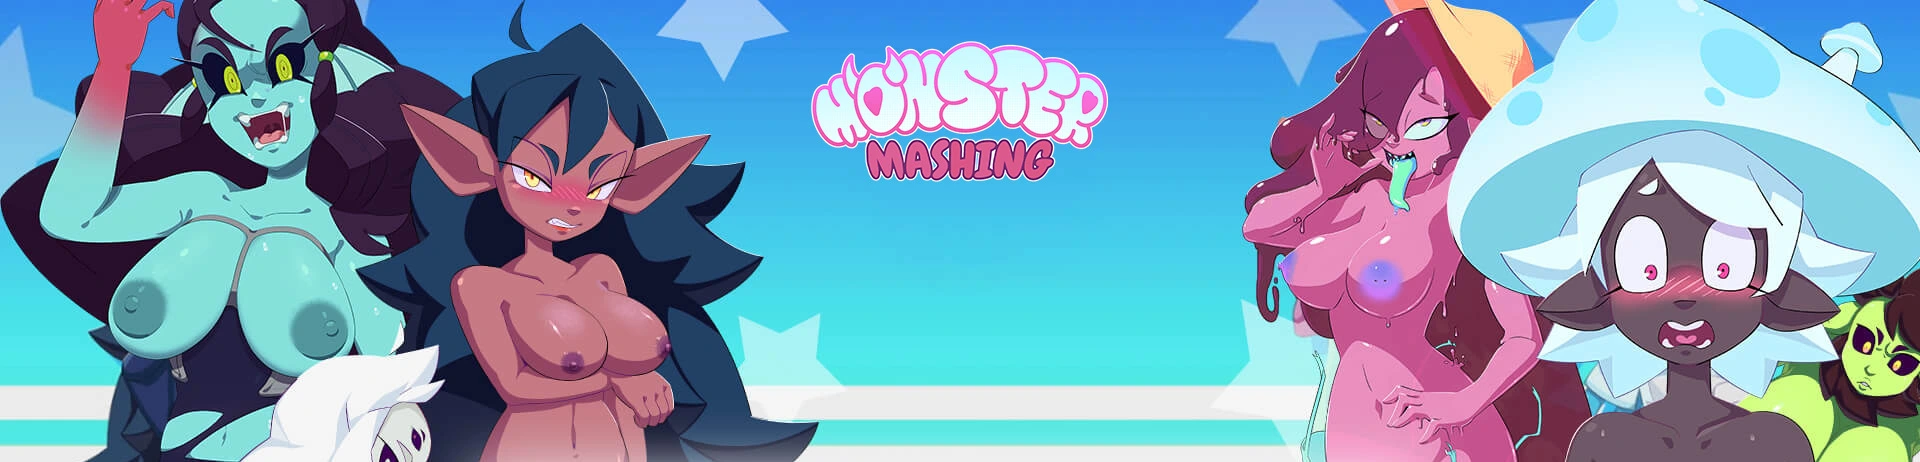 Monster Mashing Deluxe main image